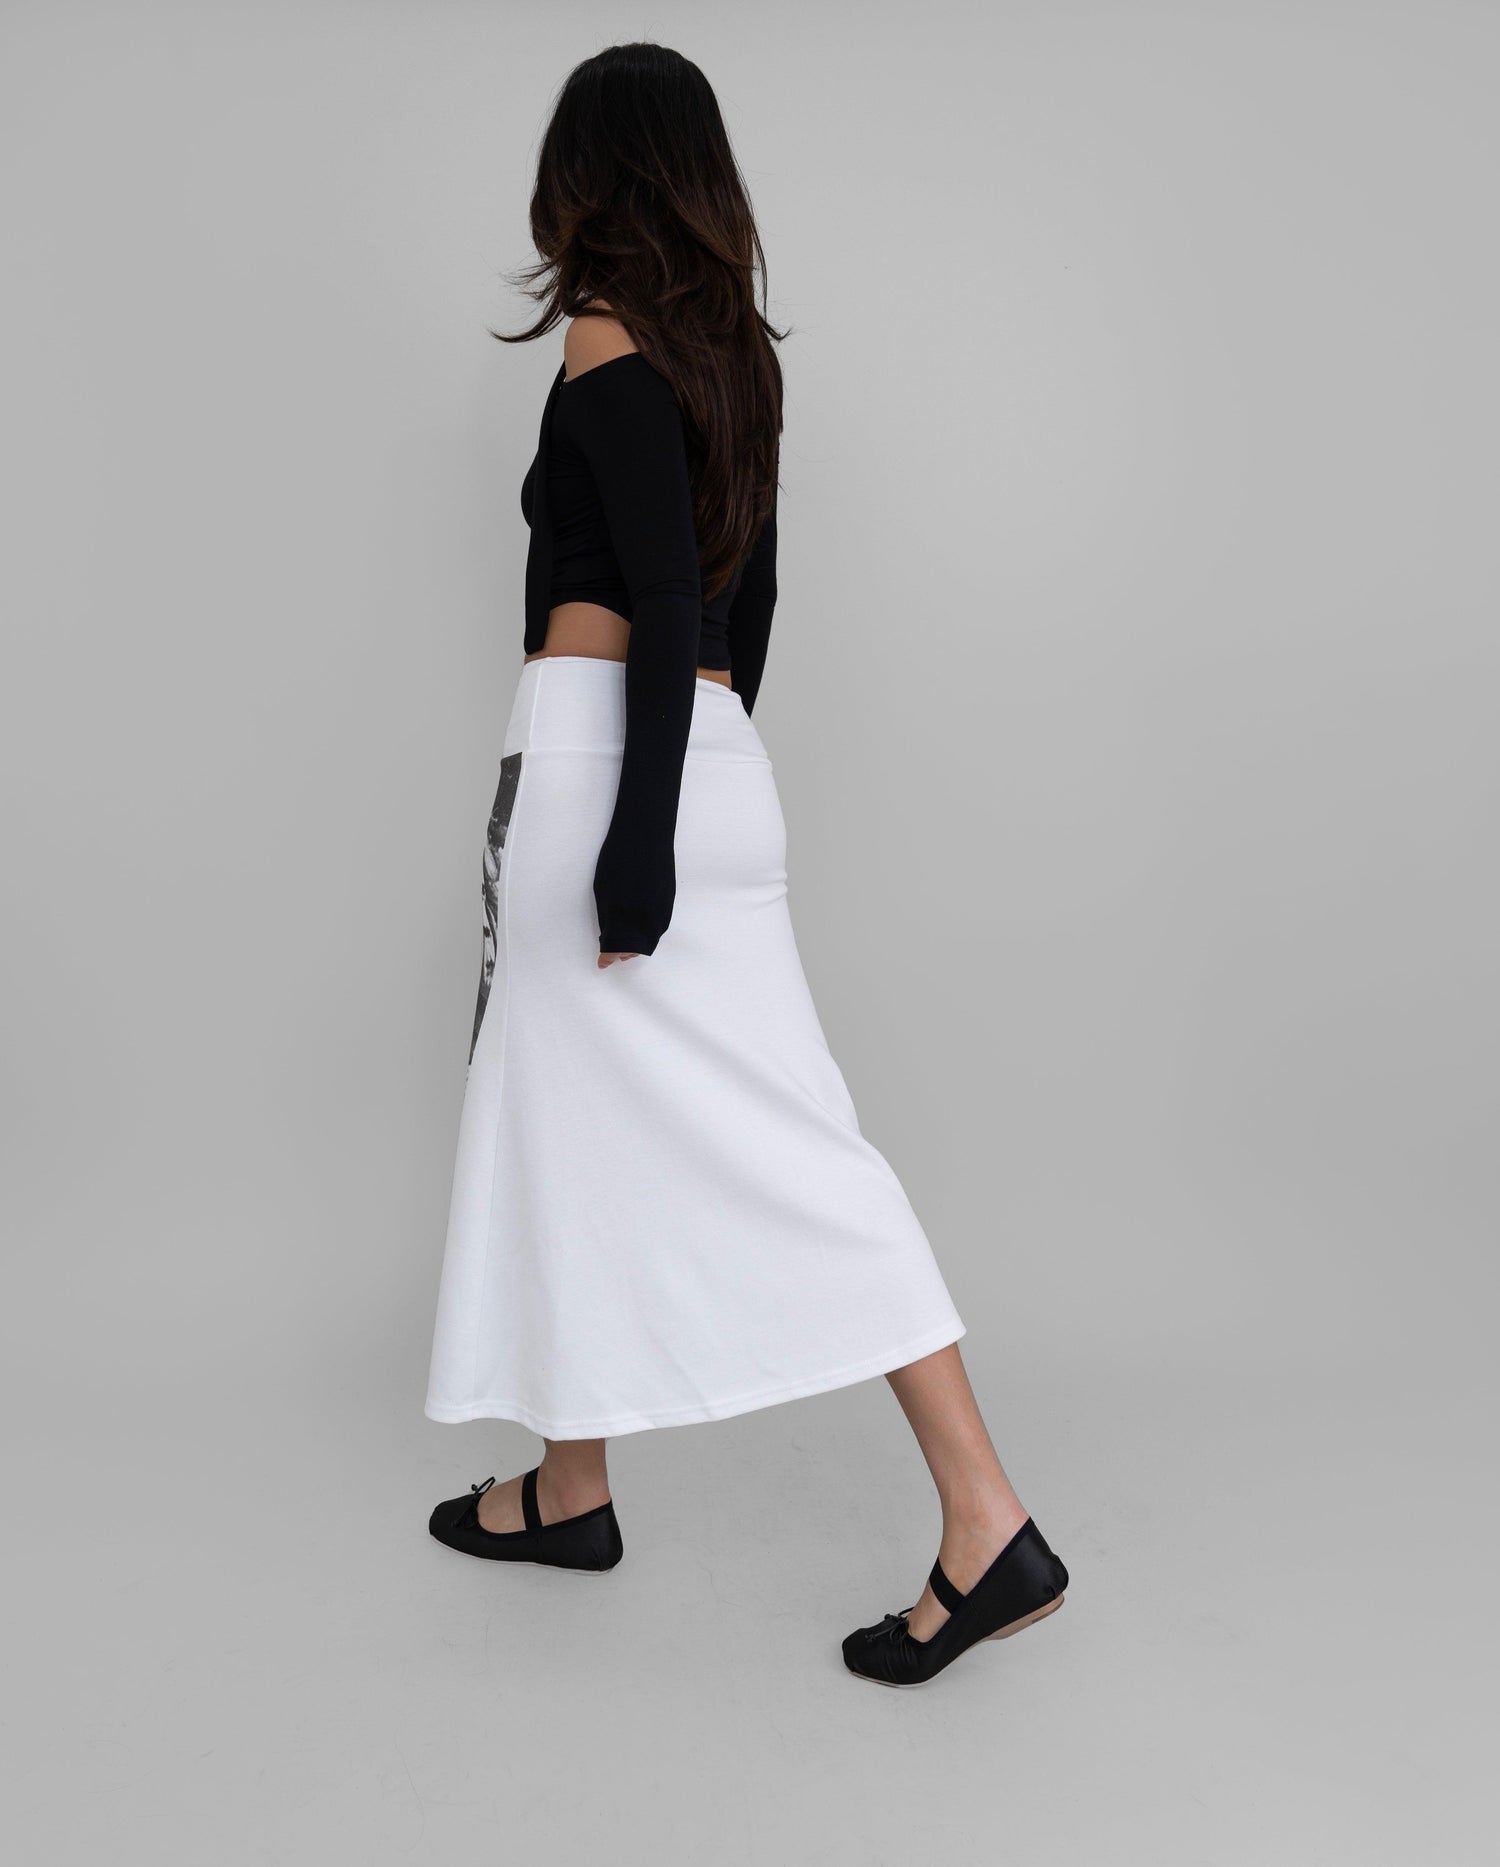 Eva Off Shoulder Long Sleeve Top With A Skinny Scarf Set / Black - The Bekk